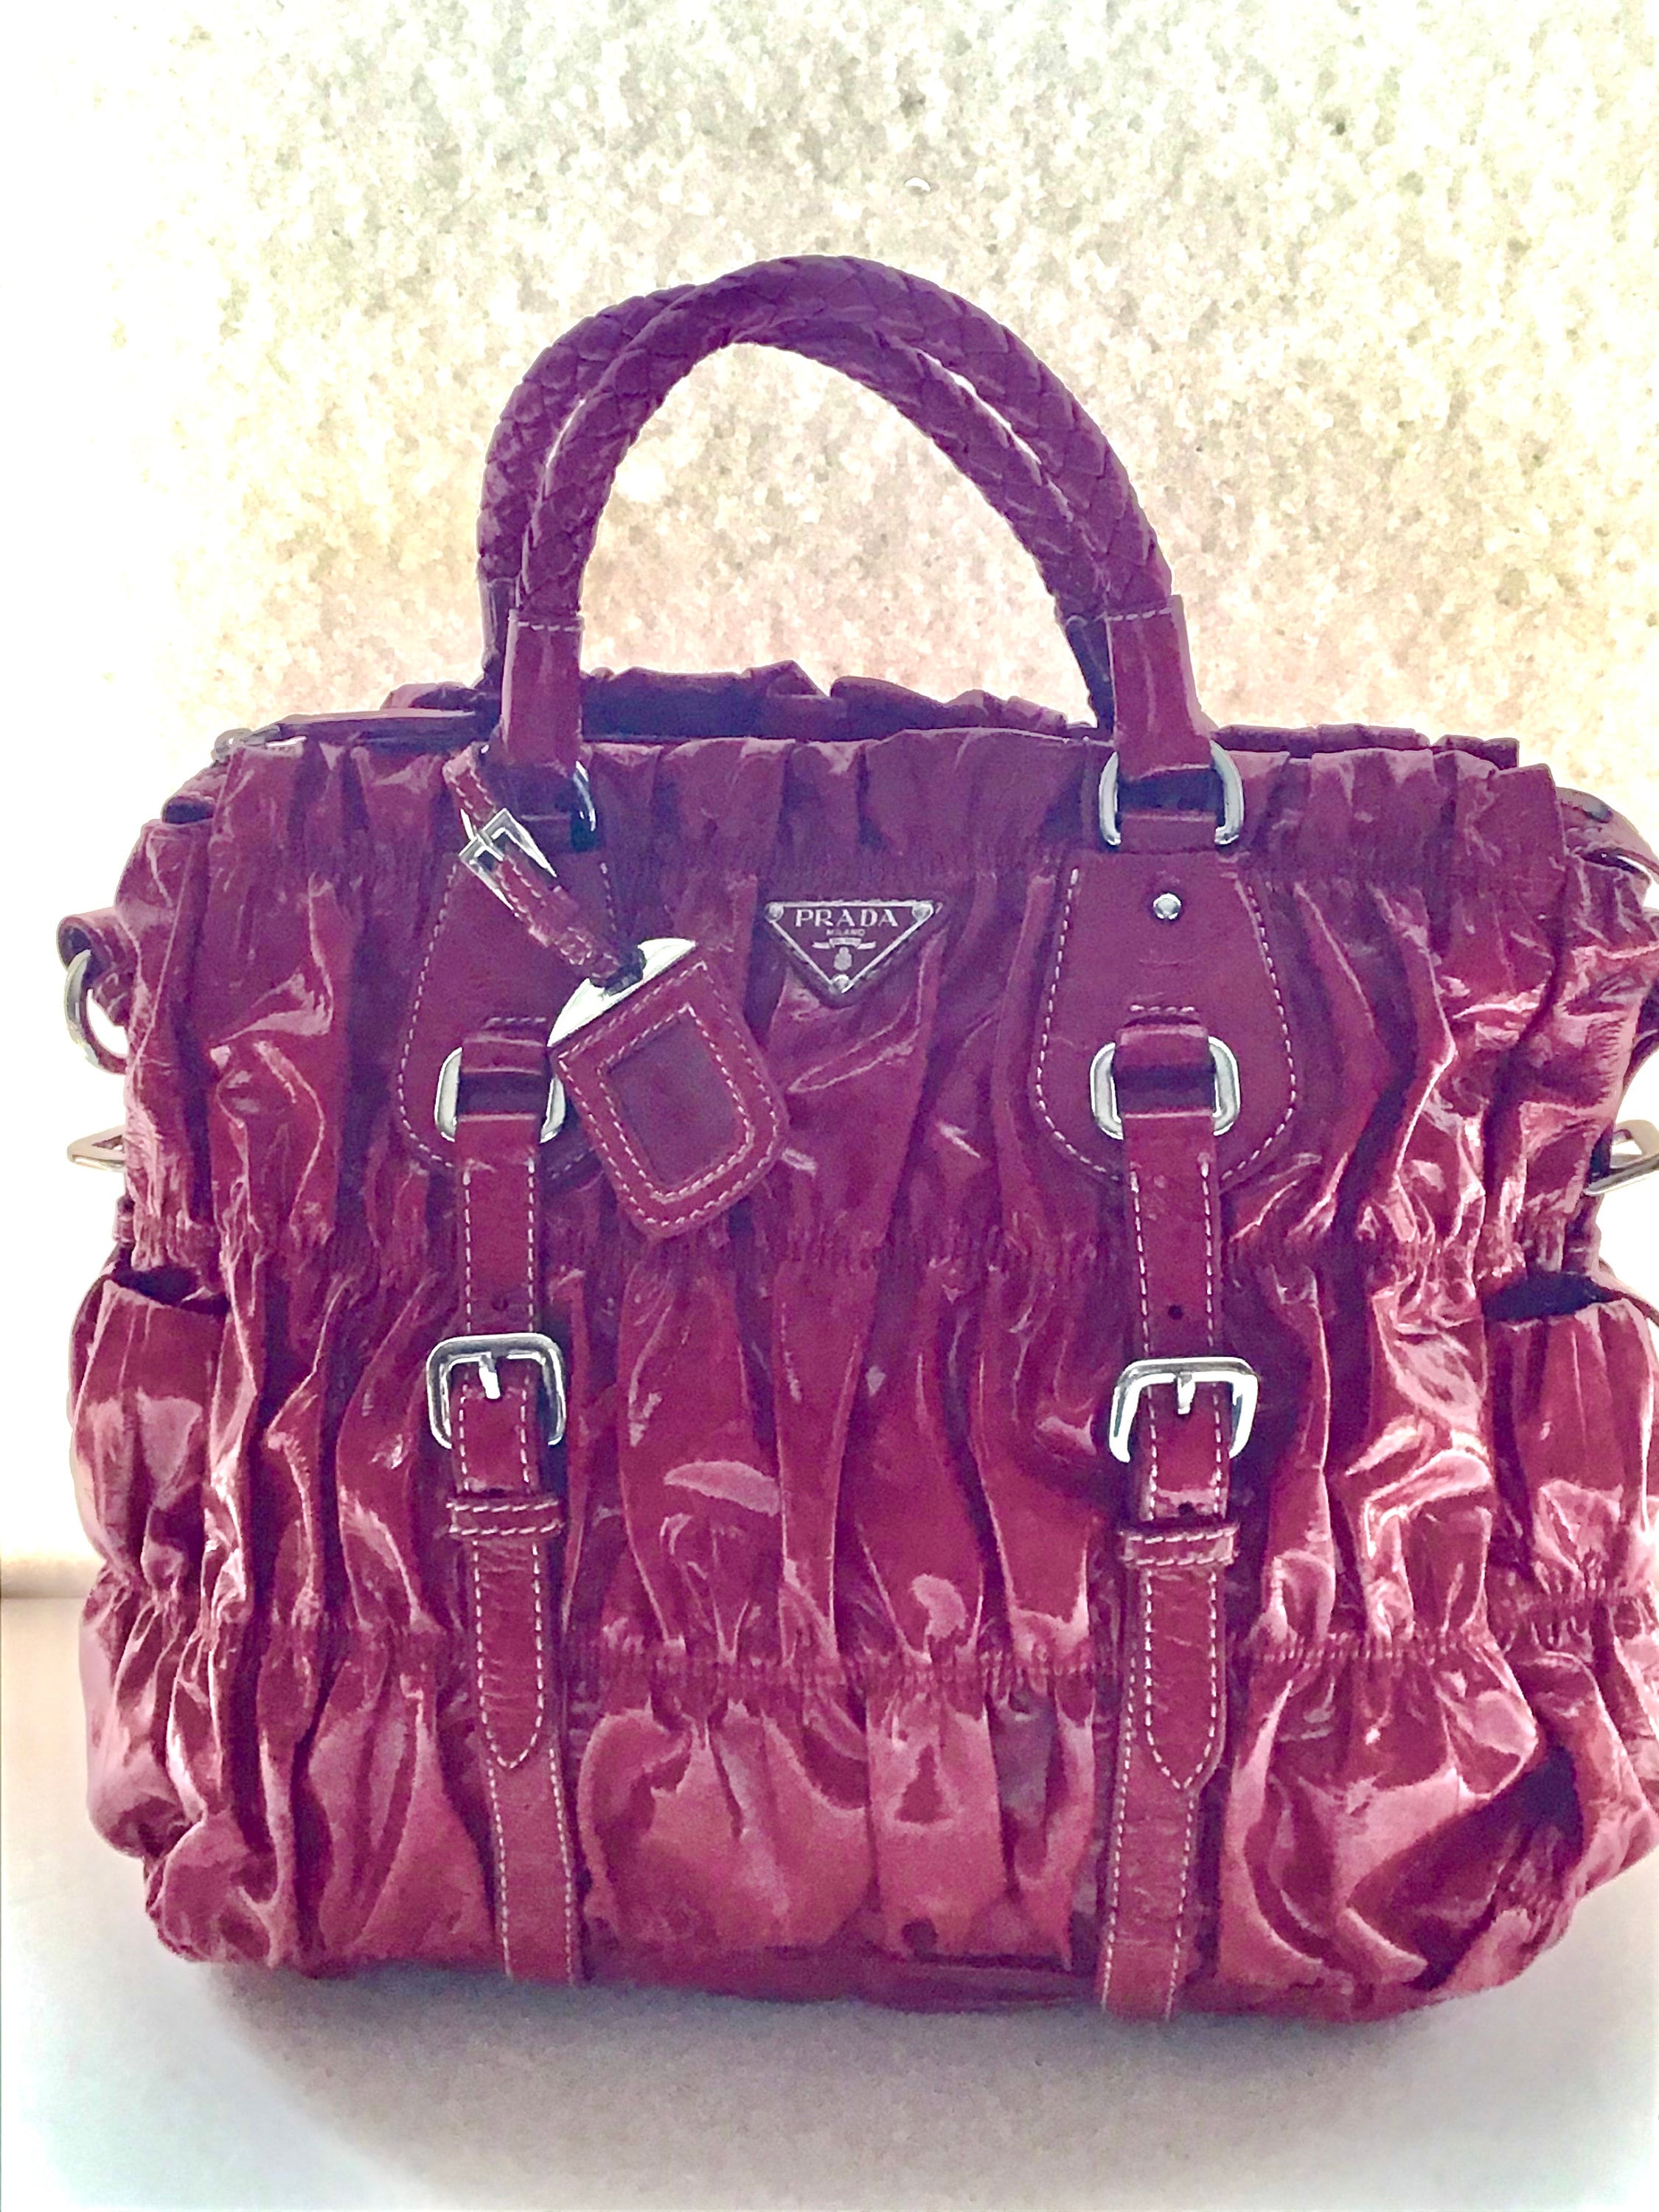 Prada Vintage Gaufre XL Bag Handbag Red Patent Leather Oversized Ruched Designer Lux Purse